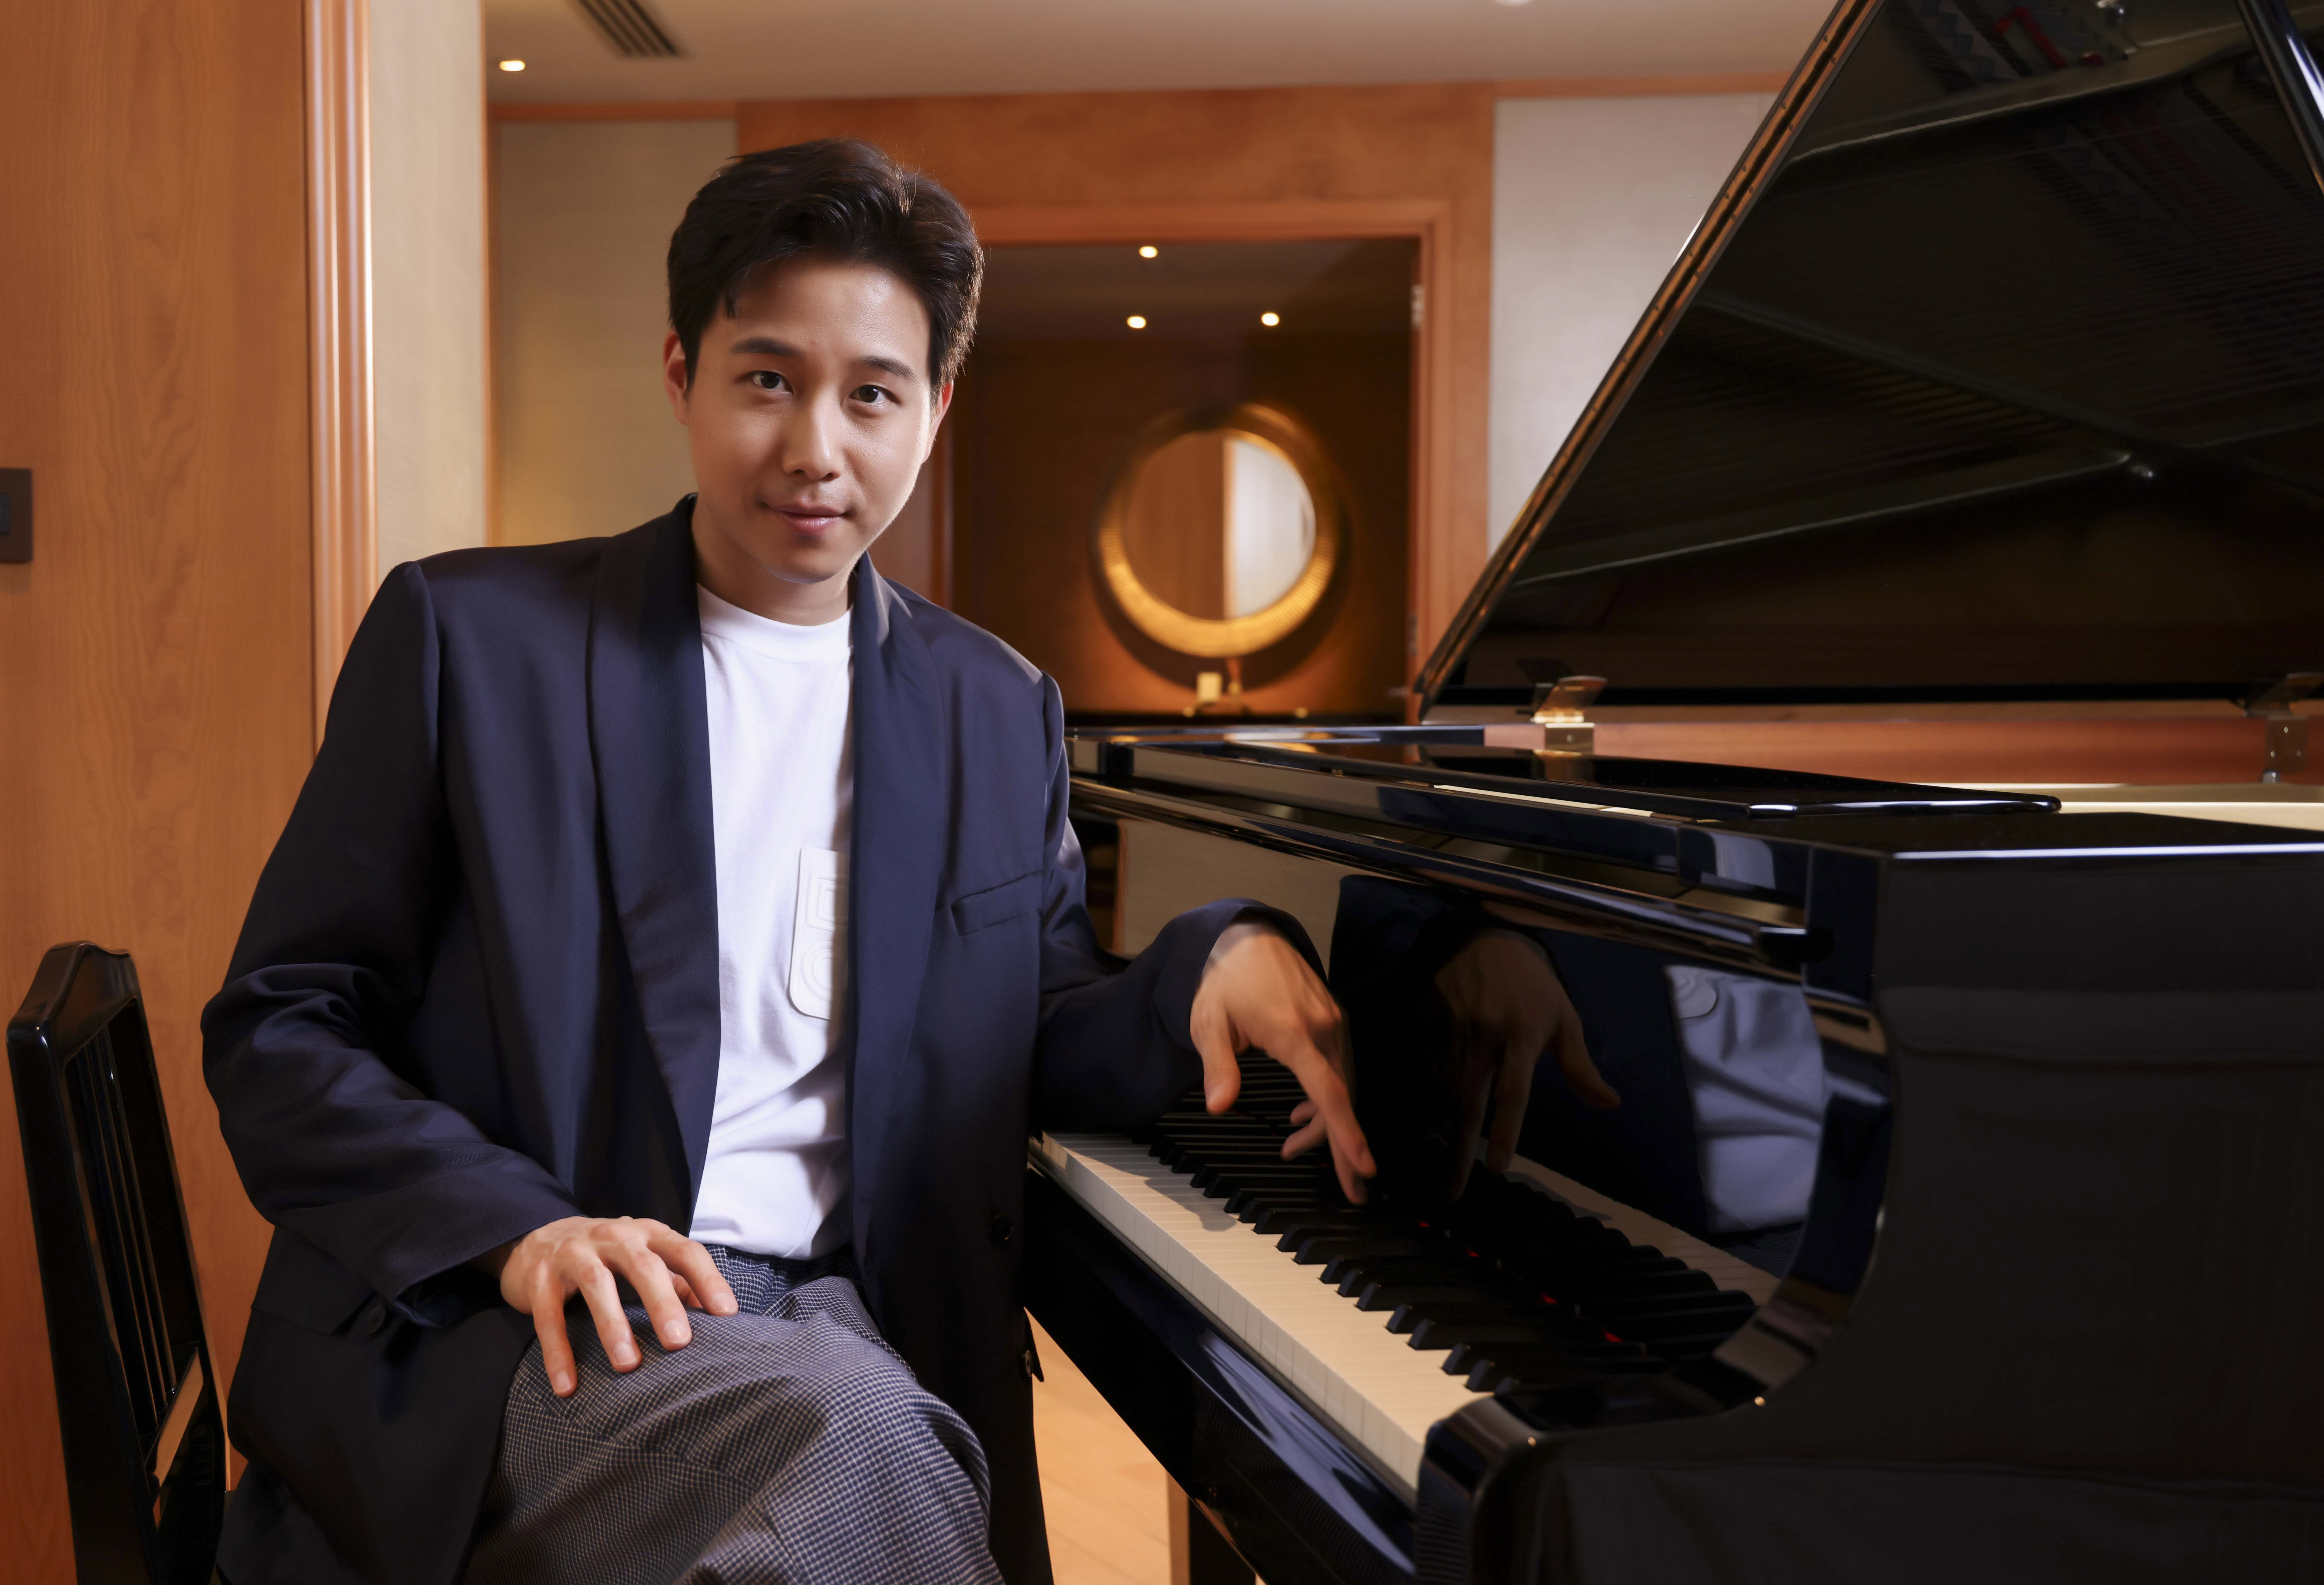 2014年魯賓斯坦國際鋼琴大賽銀獎得主林易，最近加盟新東家「星予經紀」成為跨界演奏家。圖/星予經紀提供